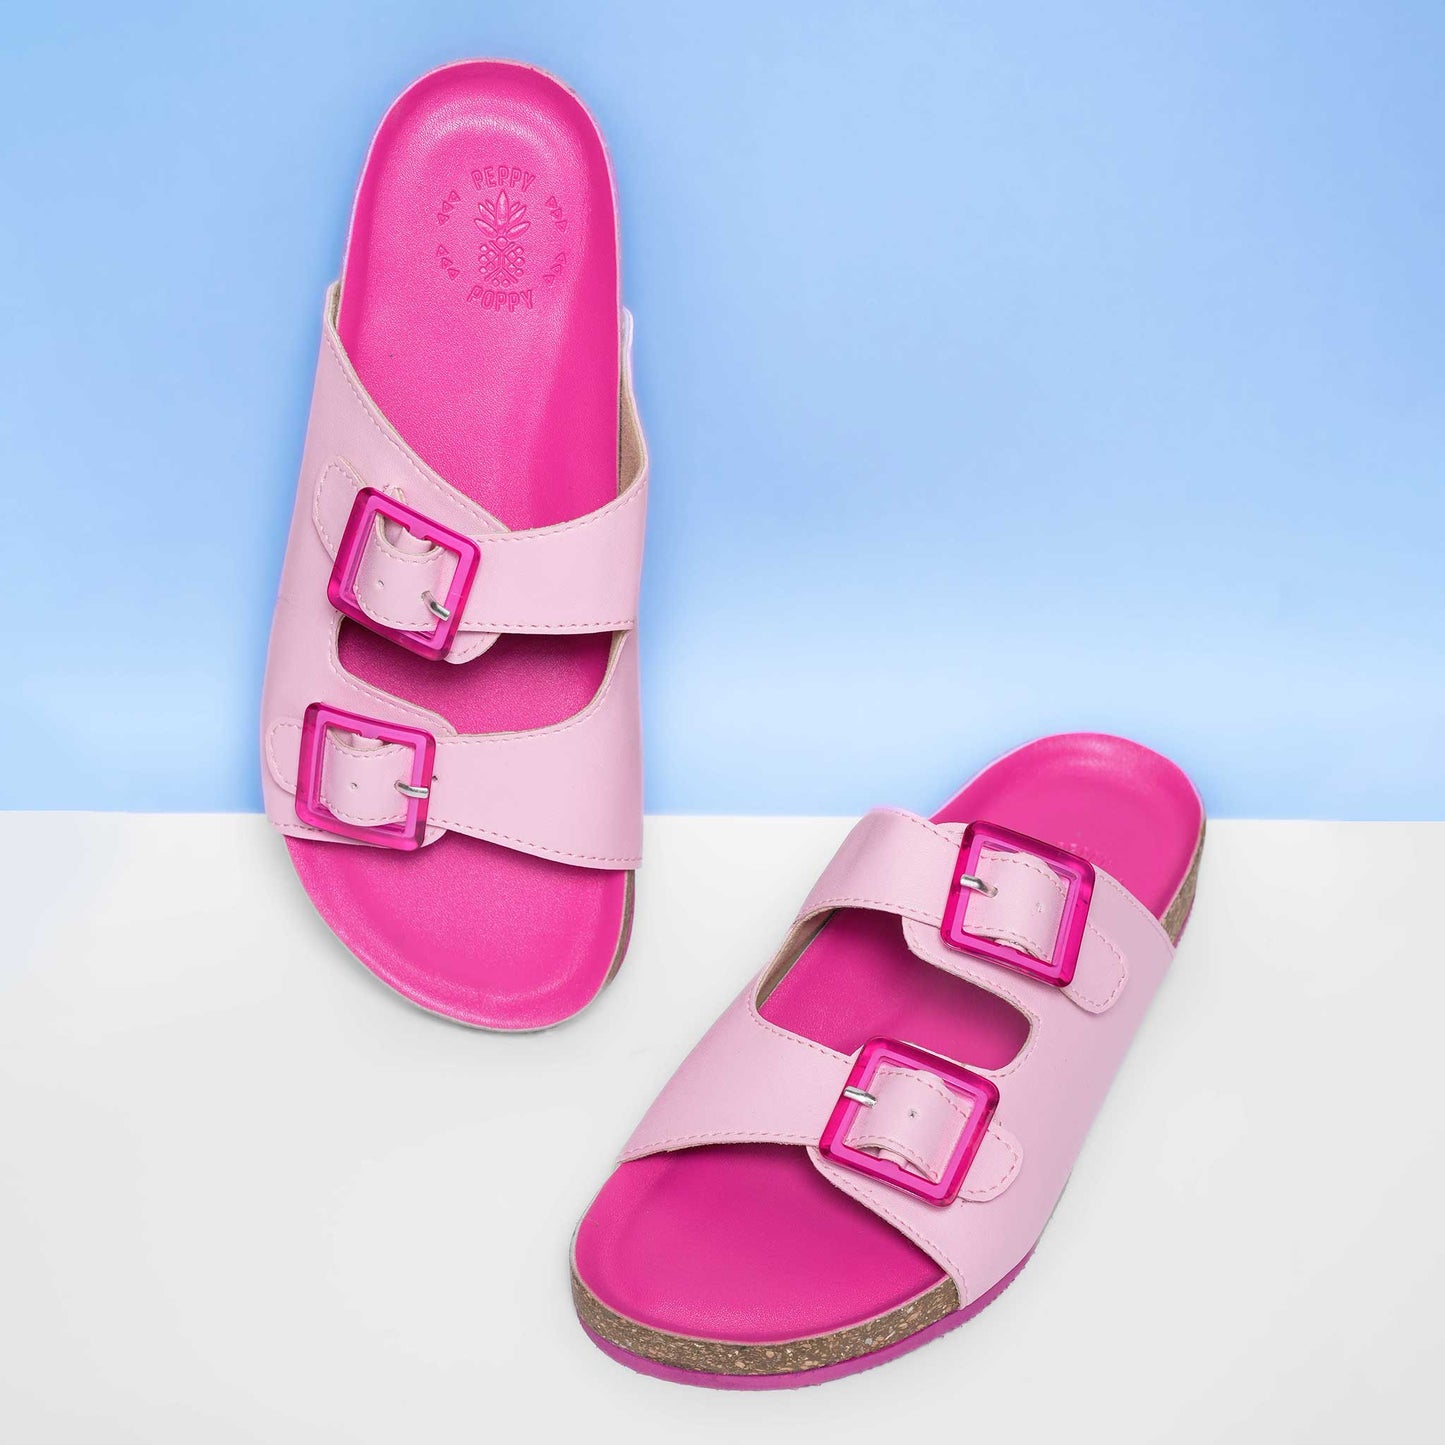 Buckled Cork Sandals - Barbie Pink